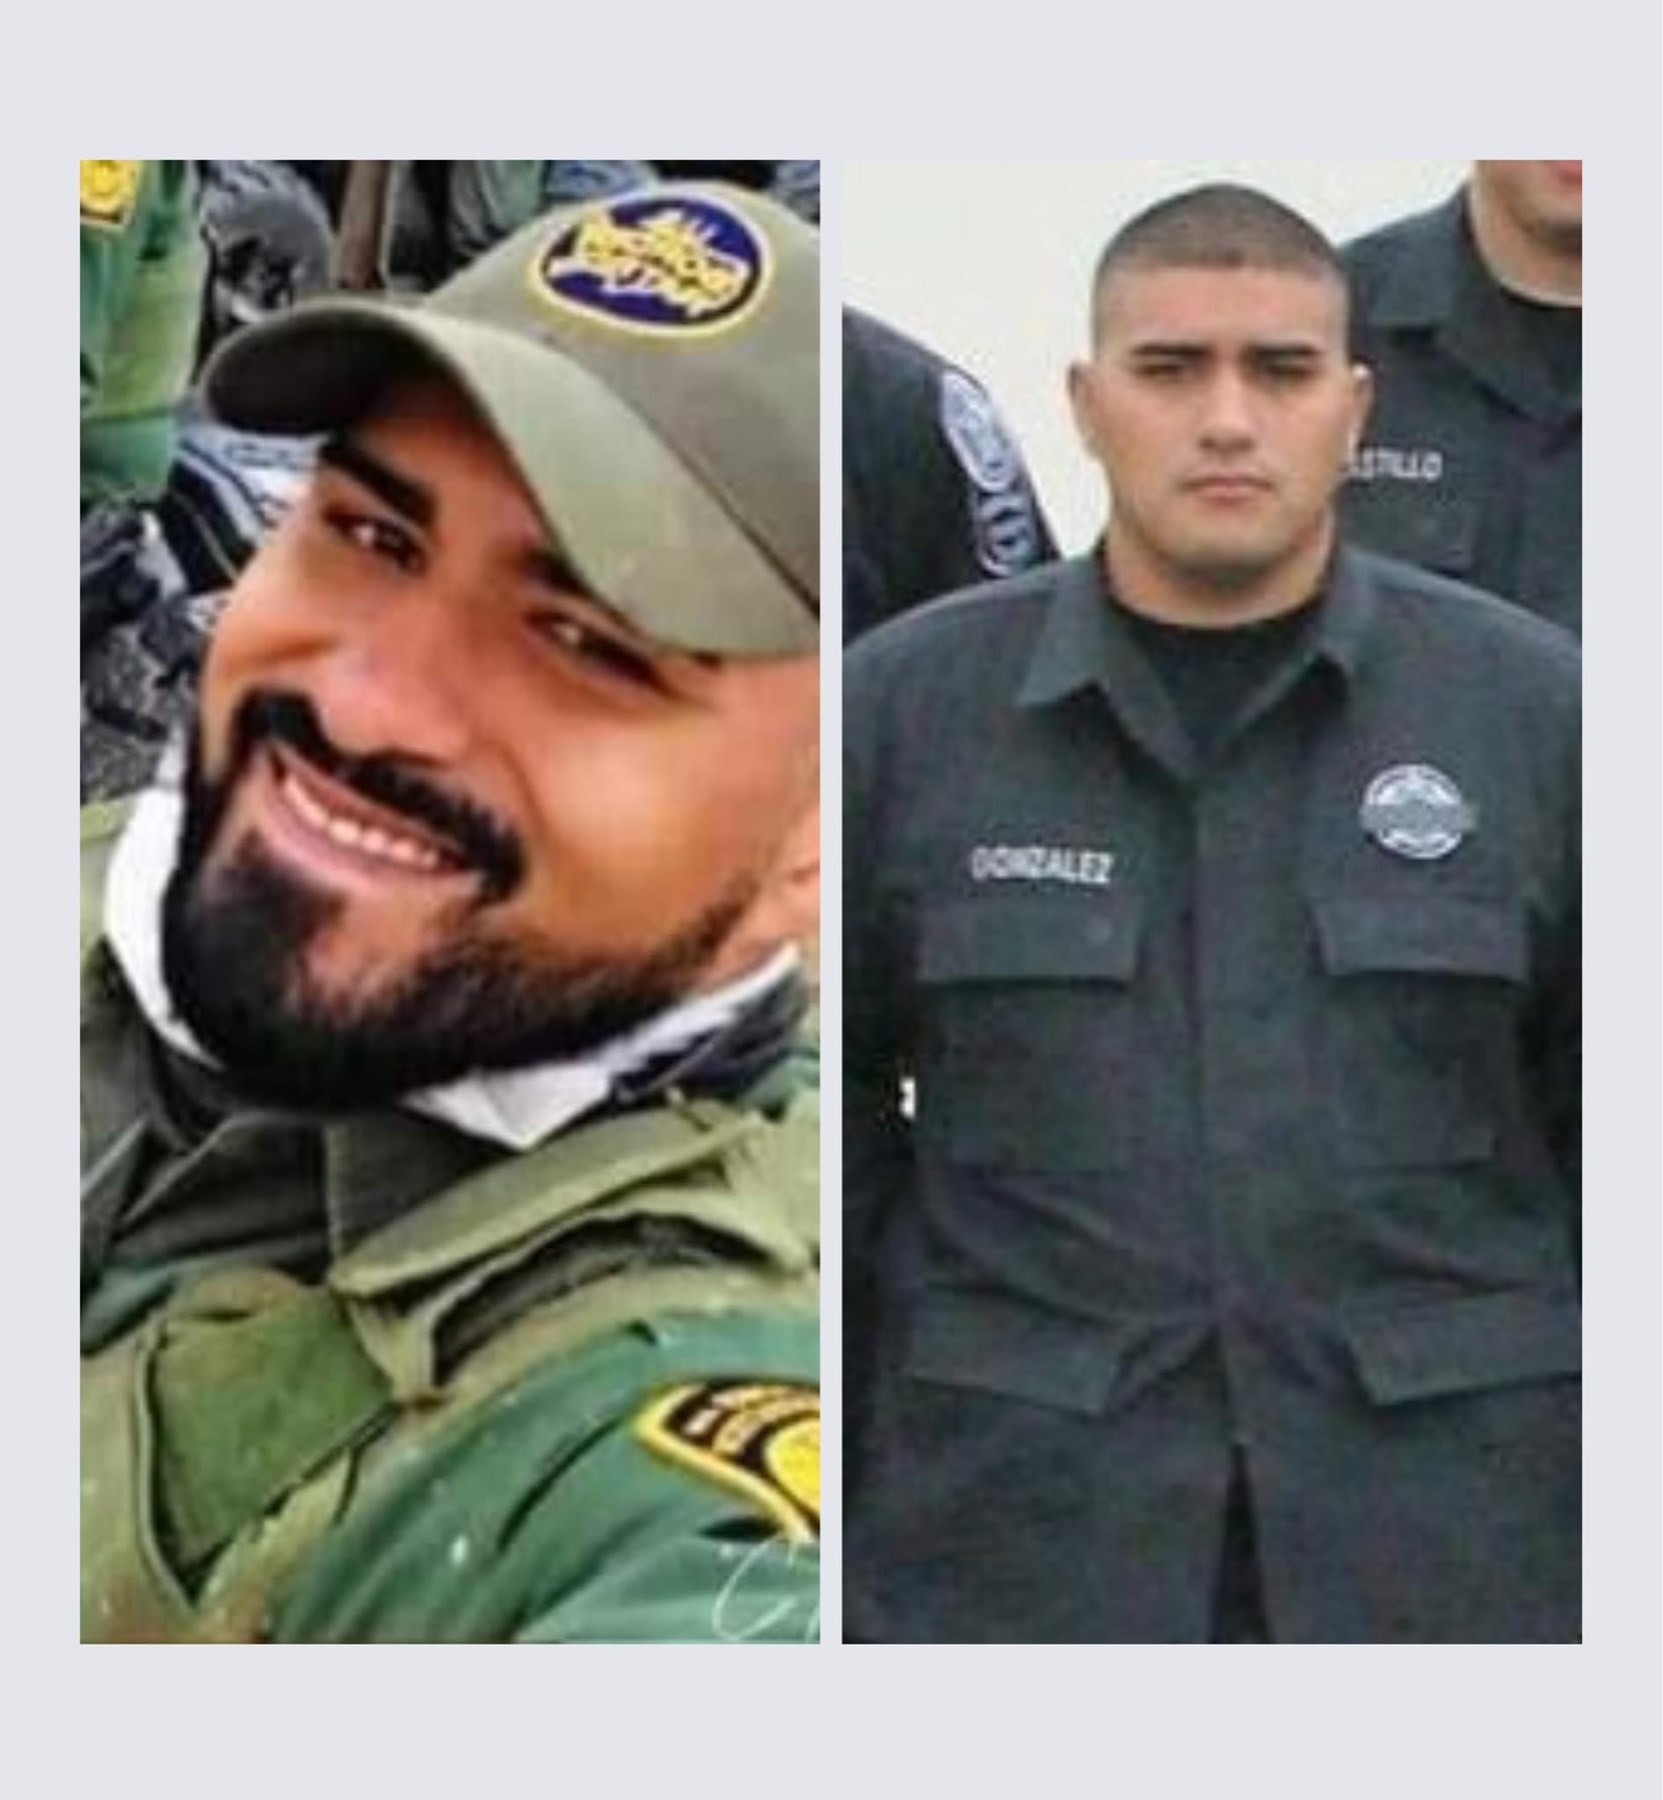 U.S. Border Patrol agent Raul Humberto Gonzalez, Jr. killed